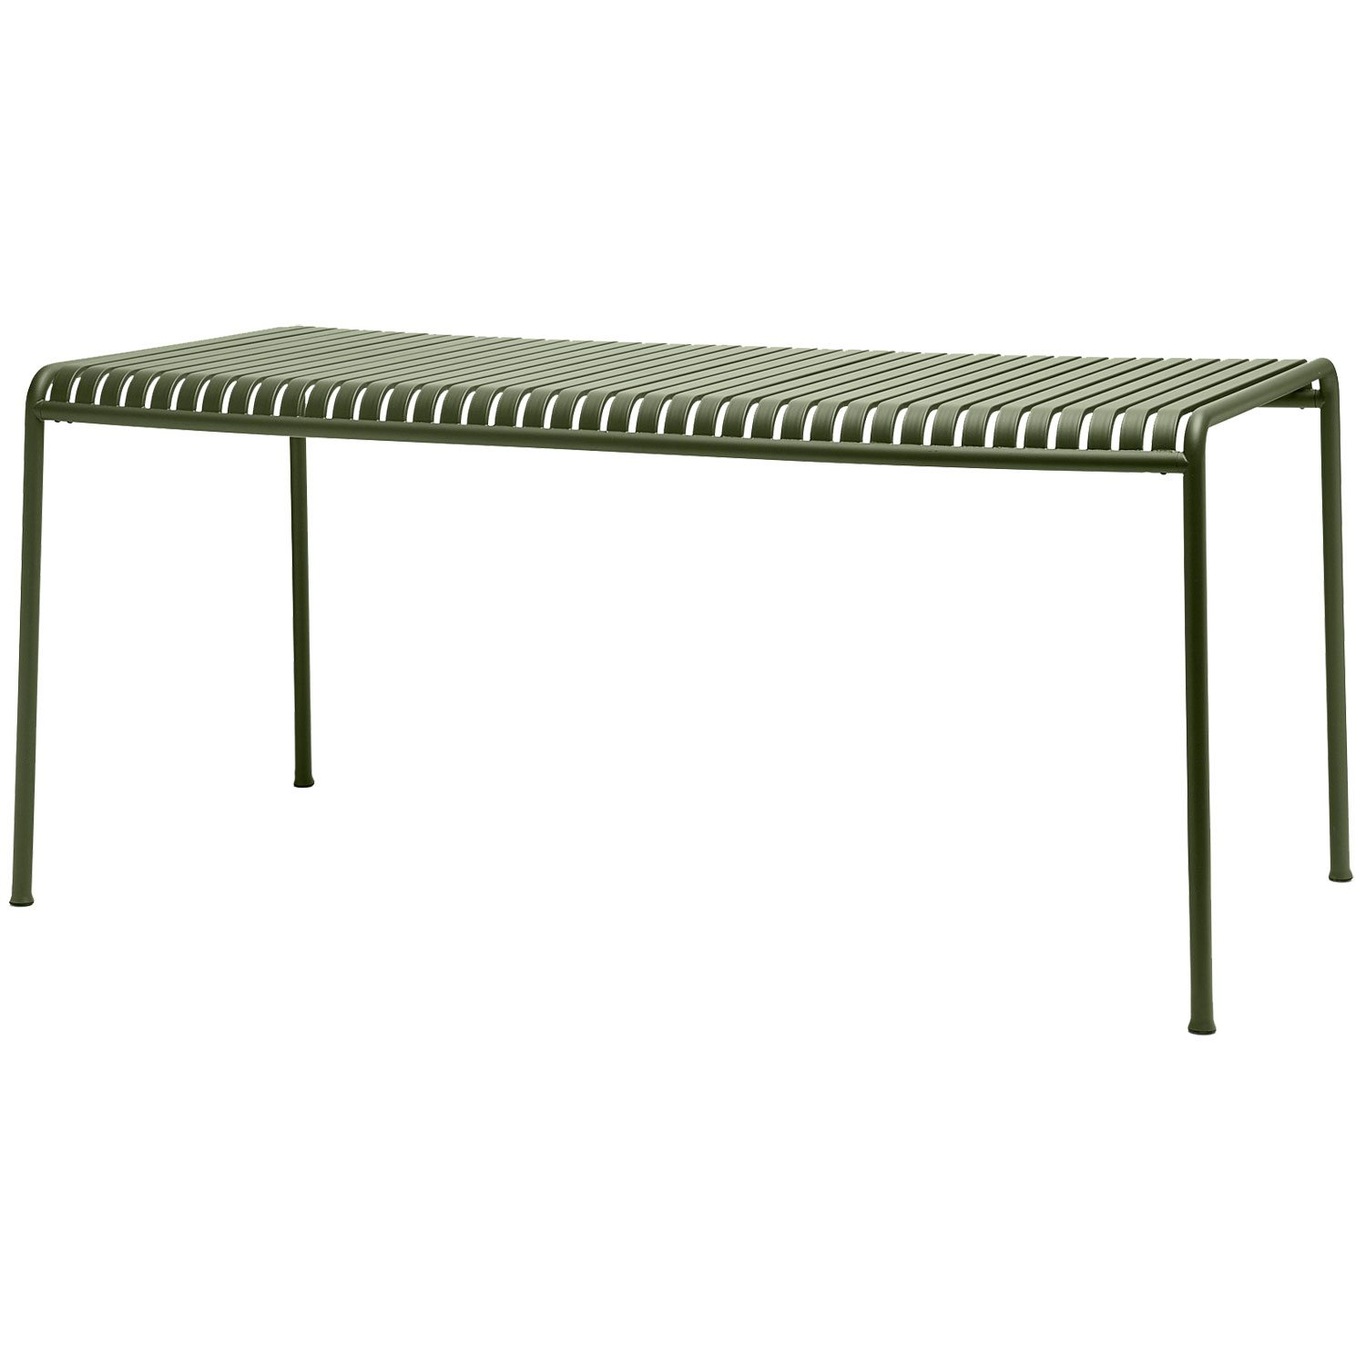 Palissade Pöytä 170x90 cm, Olive